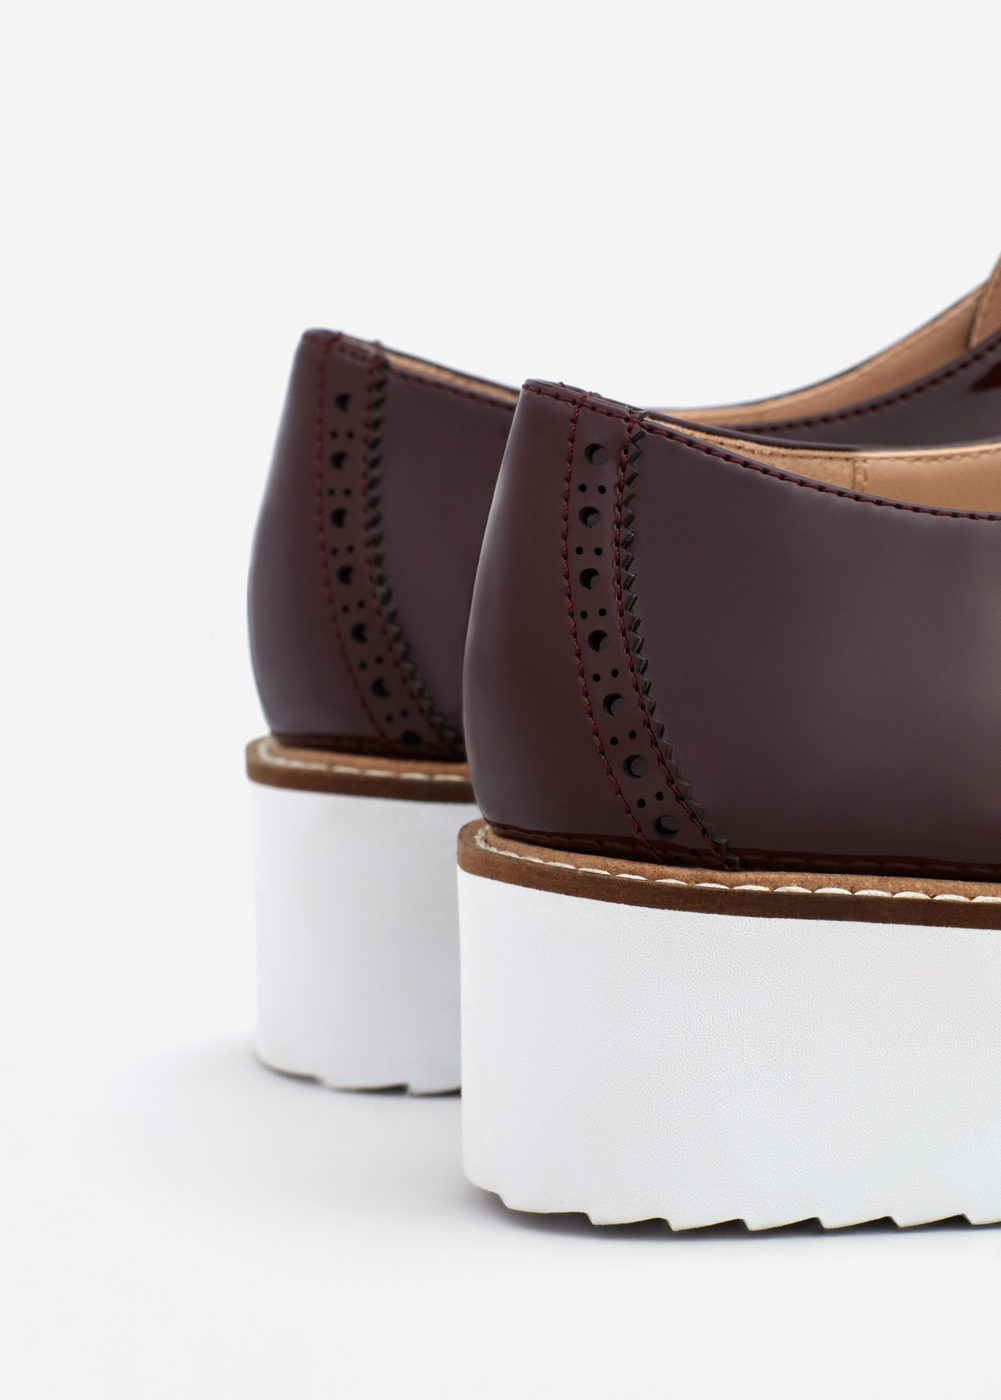 Mango platformos lakkos blucher cipő 2016 fotója